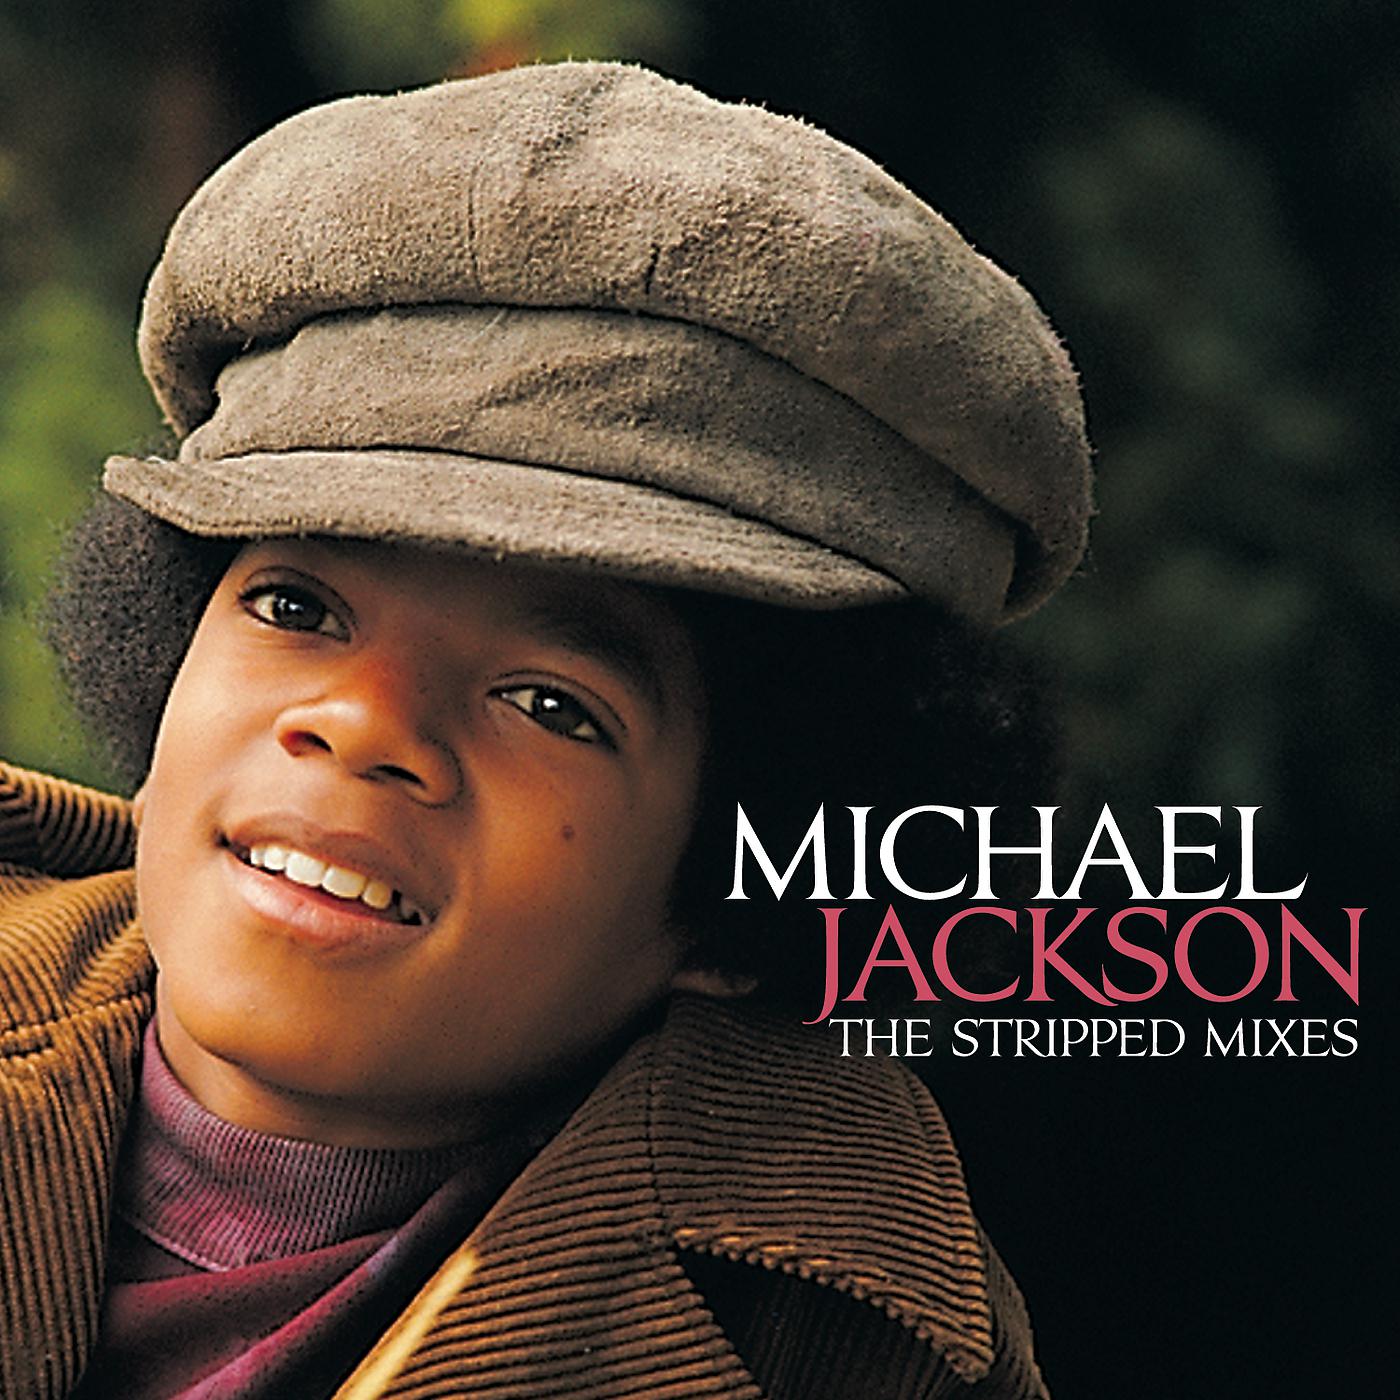 Michael jackson get. Michael Jackson 1972. Michael Jackson 1971. Michael Jackson - got to be there обложка.